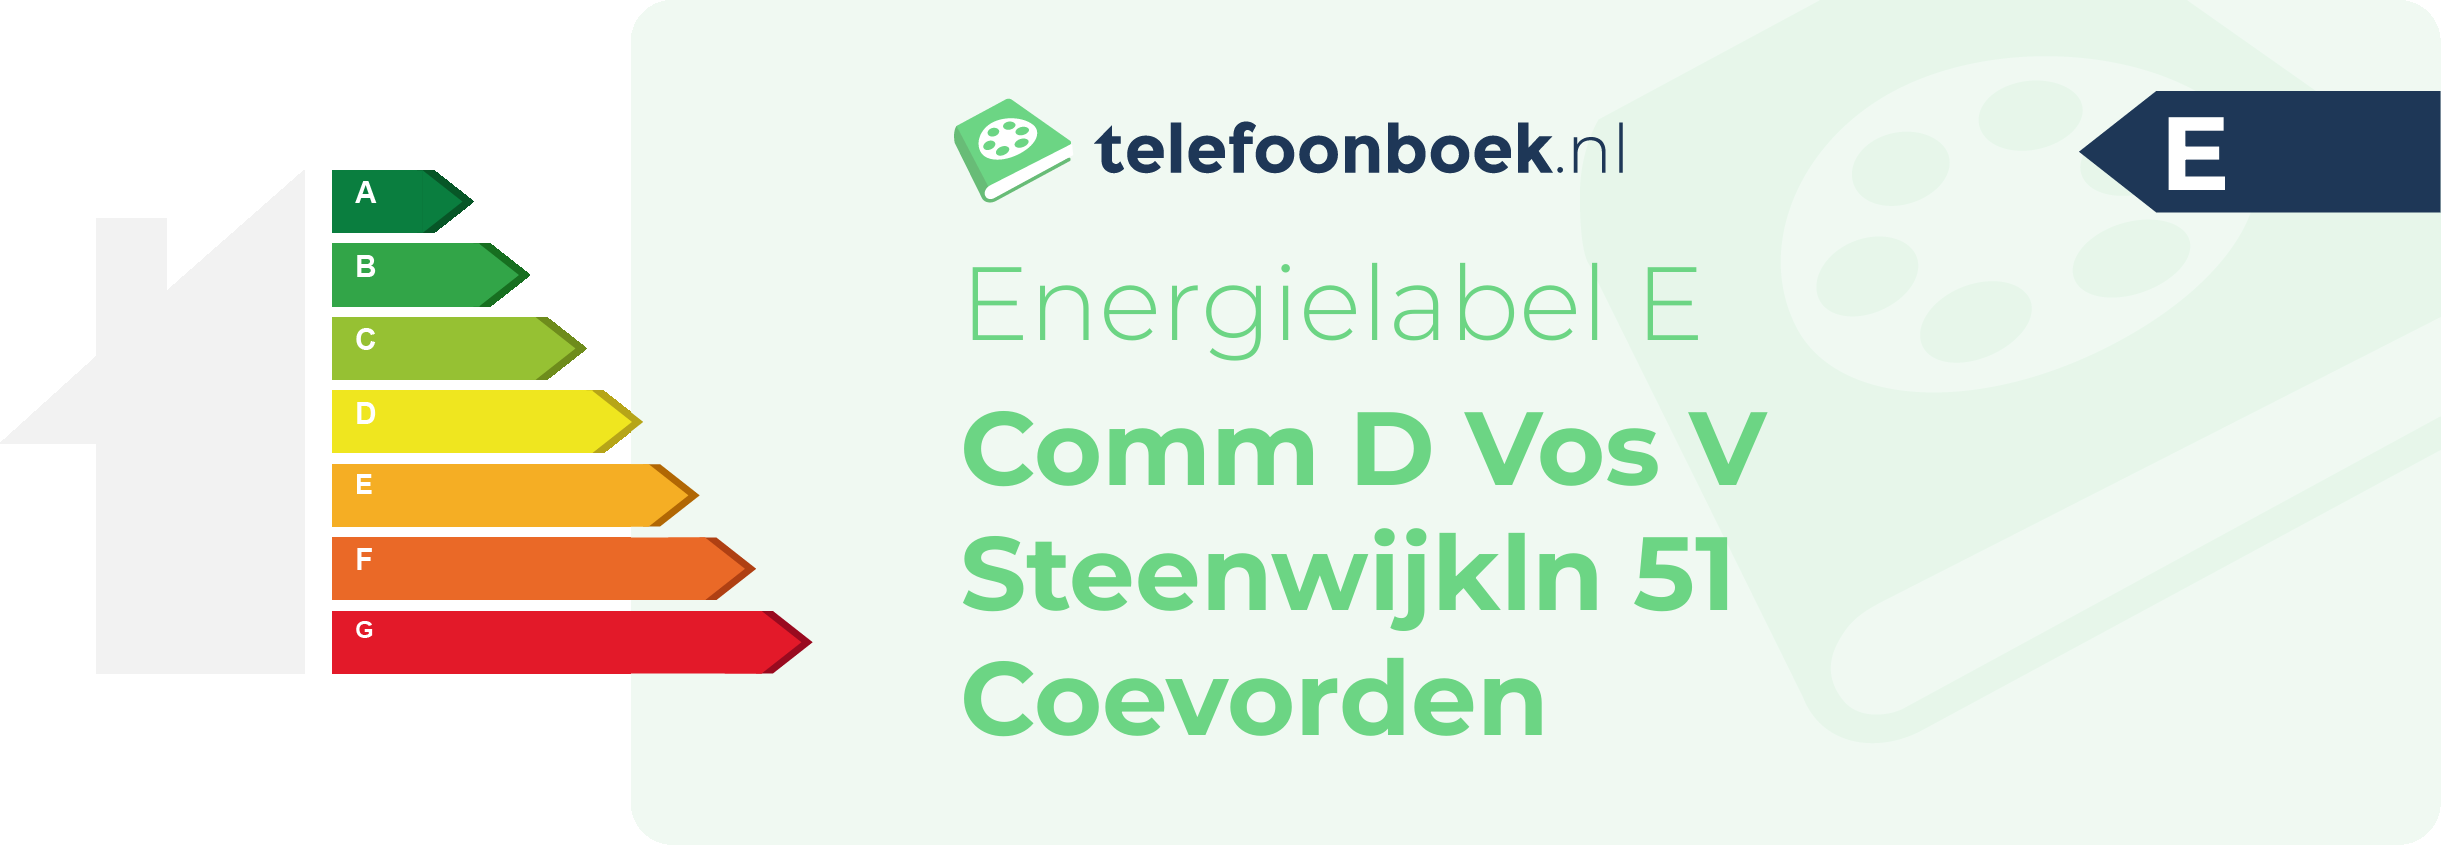 Energielabel Comm D Vos V Steenwijkln 51 Coevorden